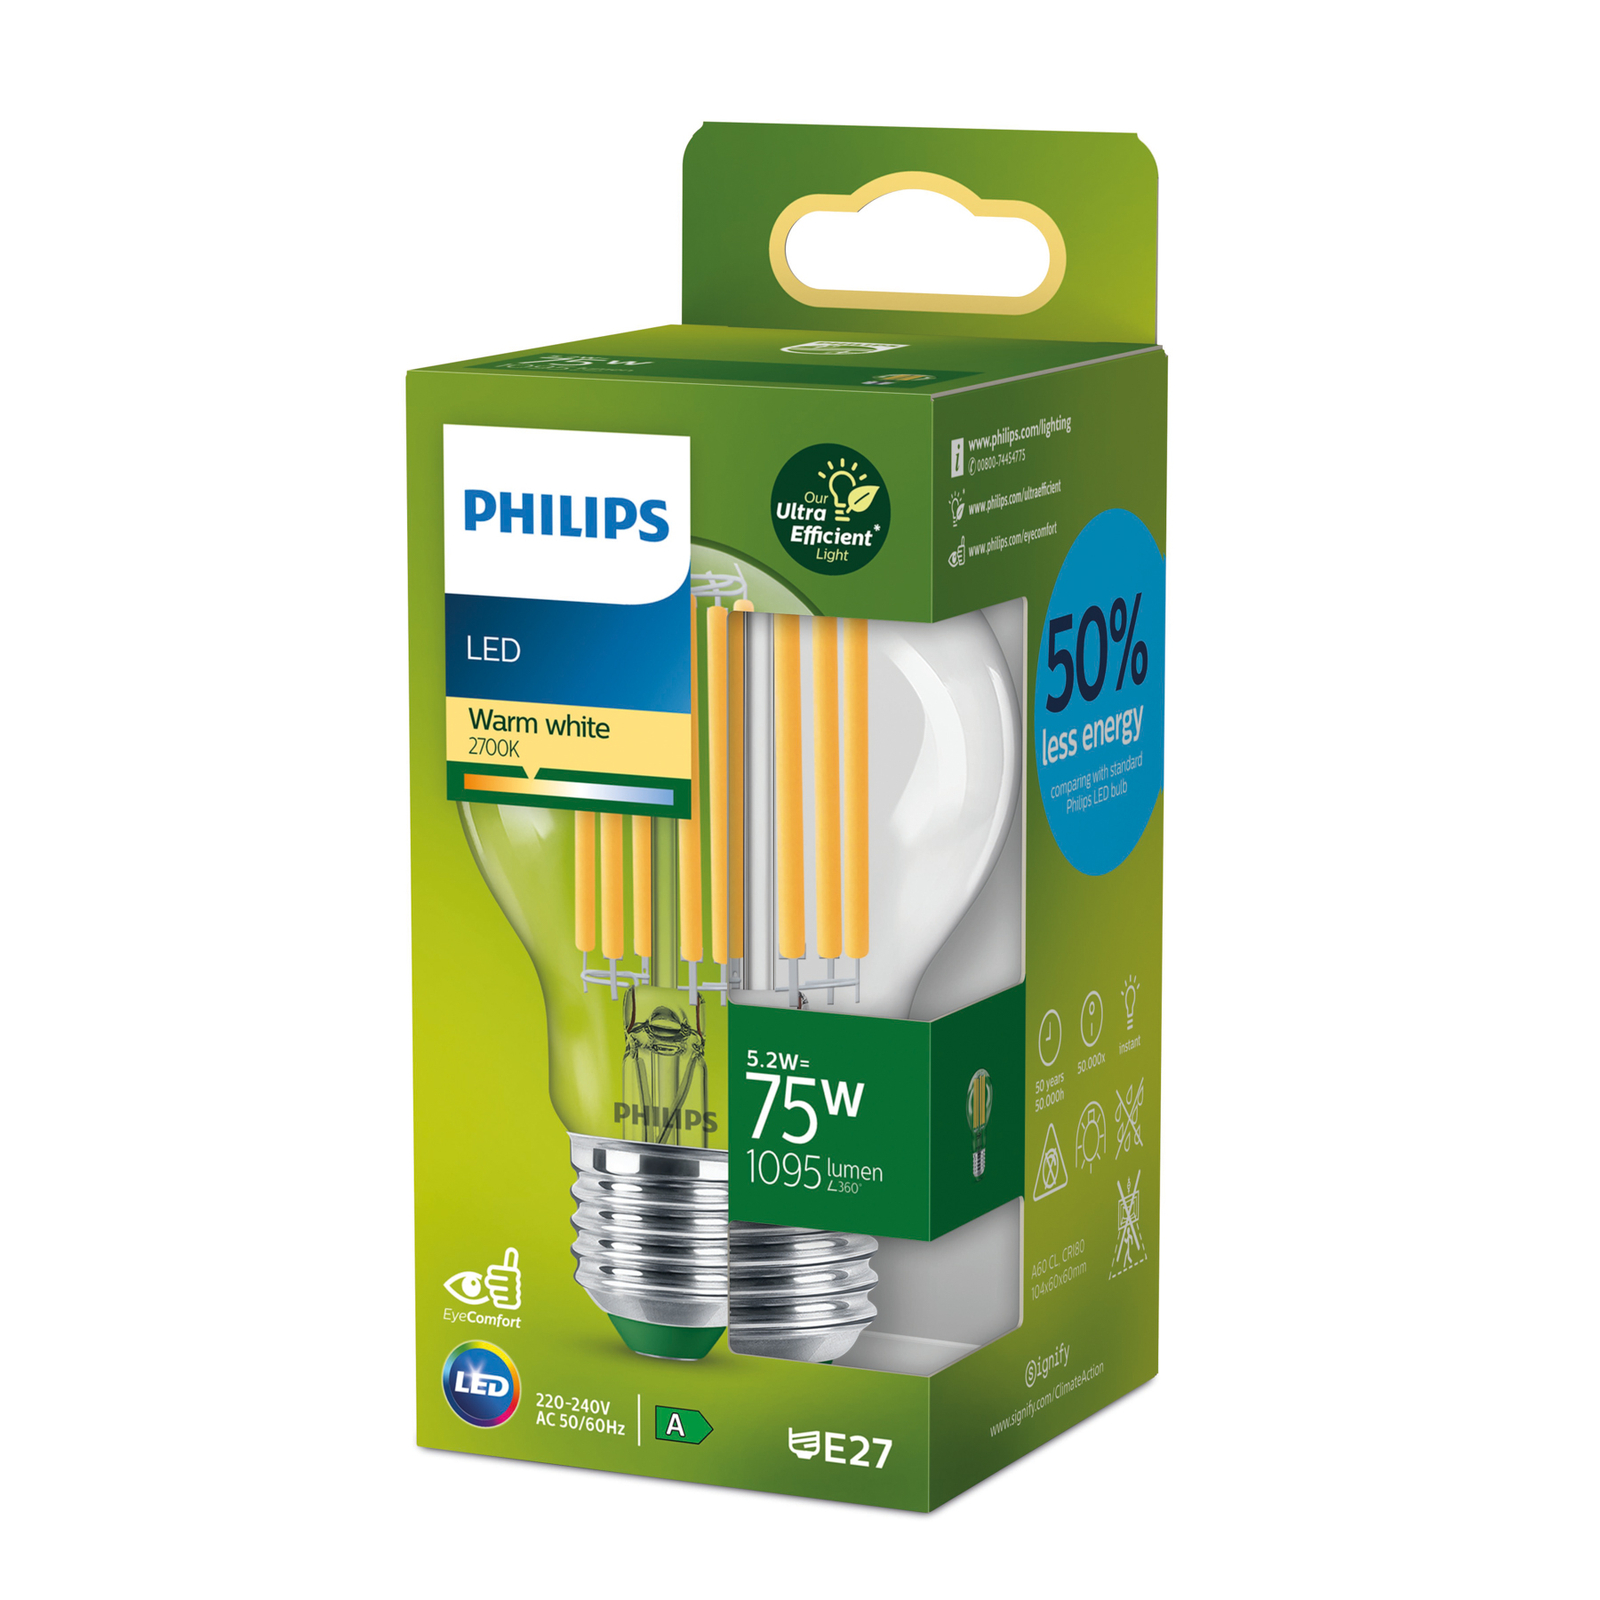 Philips E27 LED žiarovka 5,2W 1095lm 2700K číra